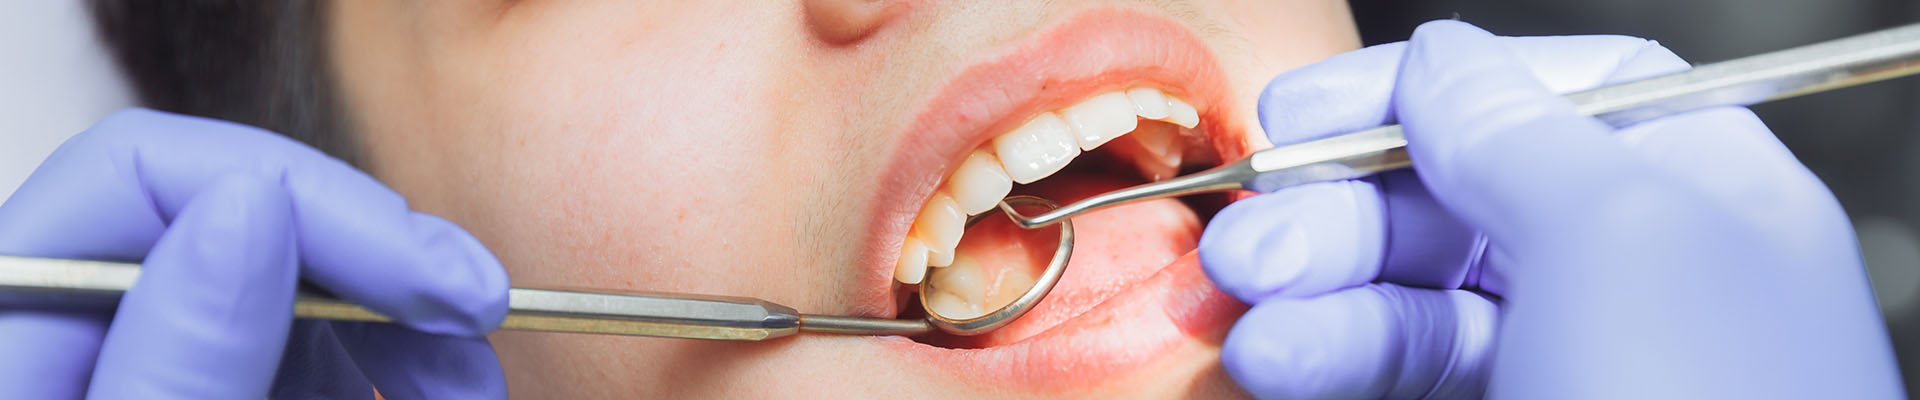 Clínica Dental Andrea Compte, tu Centro Odontológico especializado. Odontopediatría en Cálig. La dentista examina al niño.